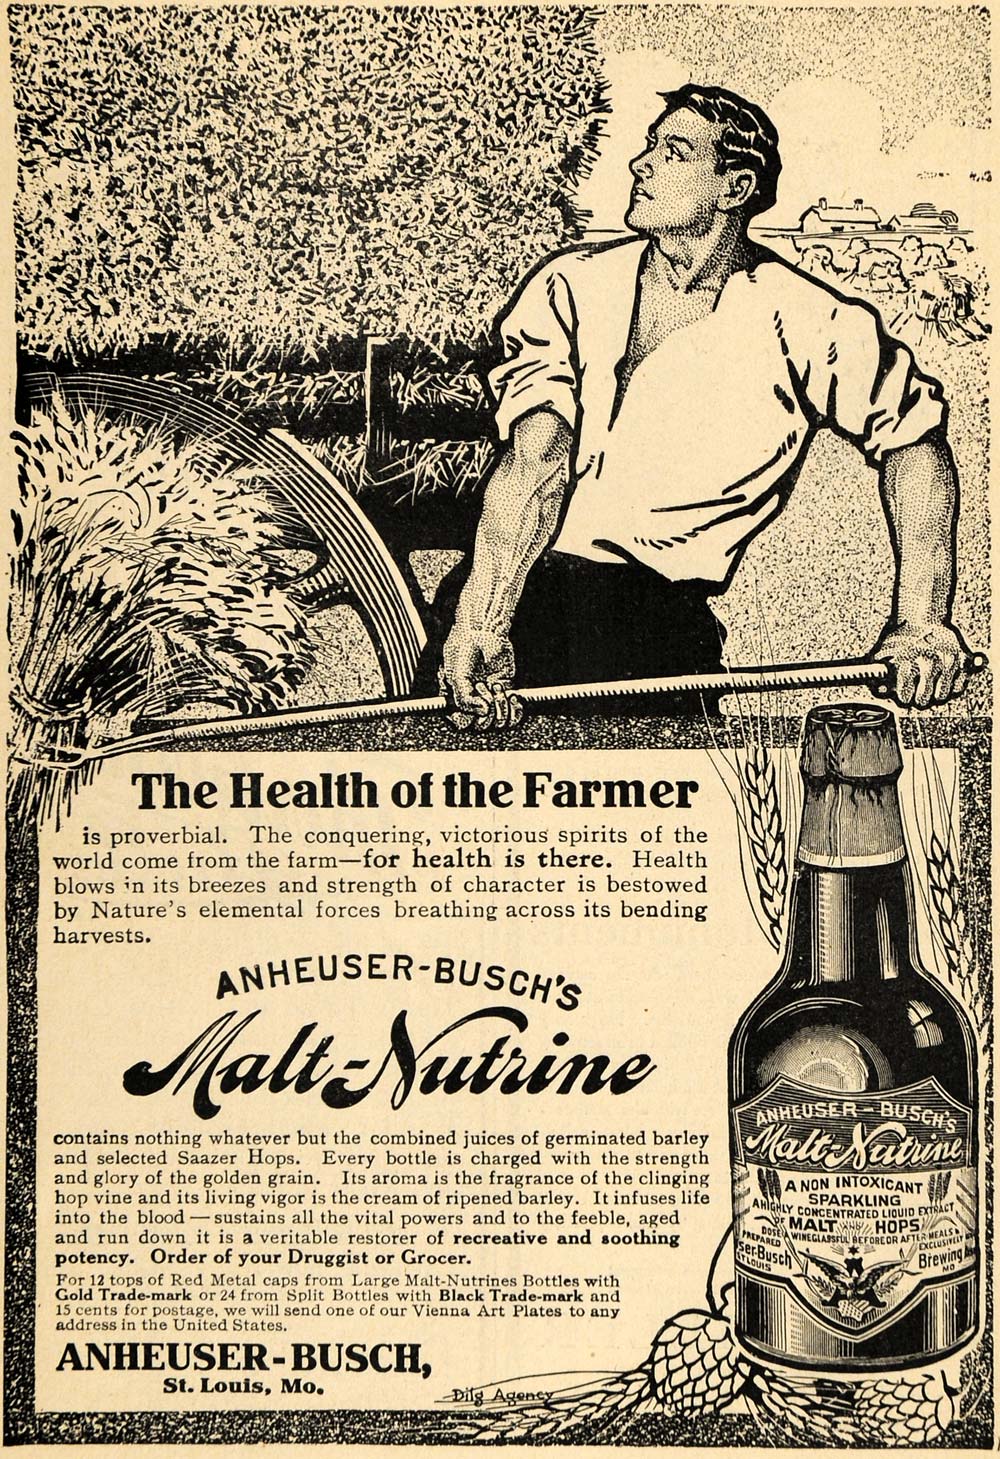 1909 Ad Anheuser-Busch's Malt-Nutrine Farm Malt Hops - ORIGINAL ADVERTISING TOM3